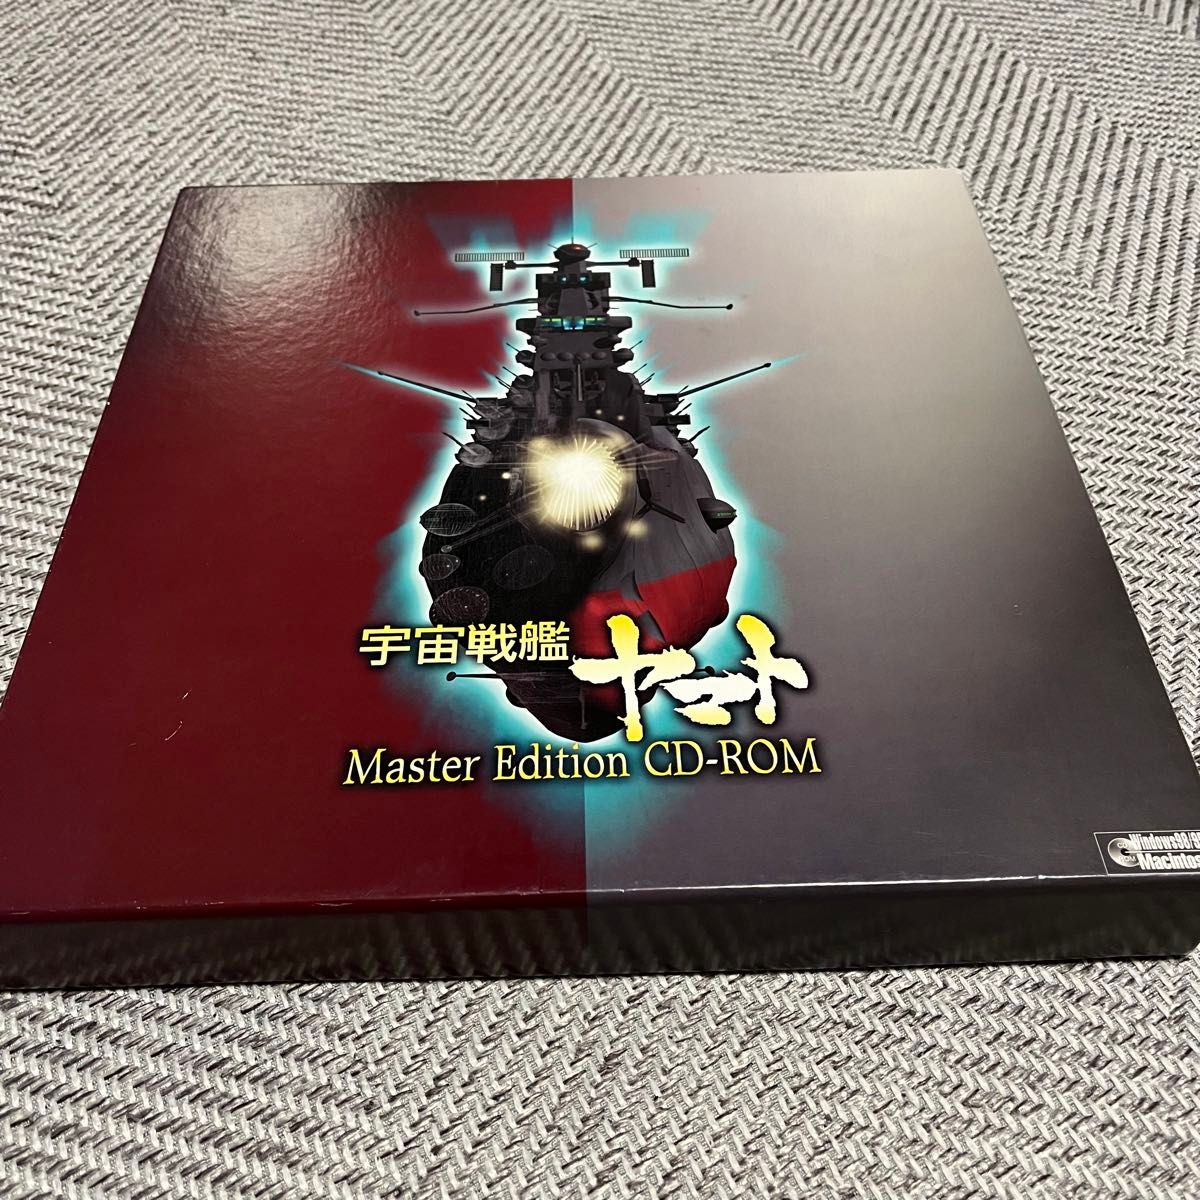 【美品】PCソフト 宇宙戦艦ヤマト Master Edition CD-ROM